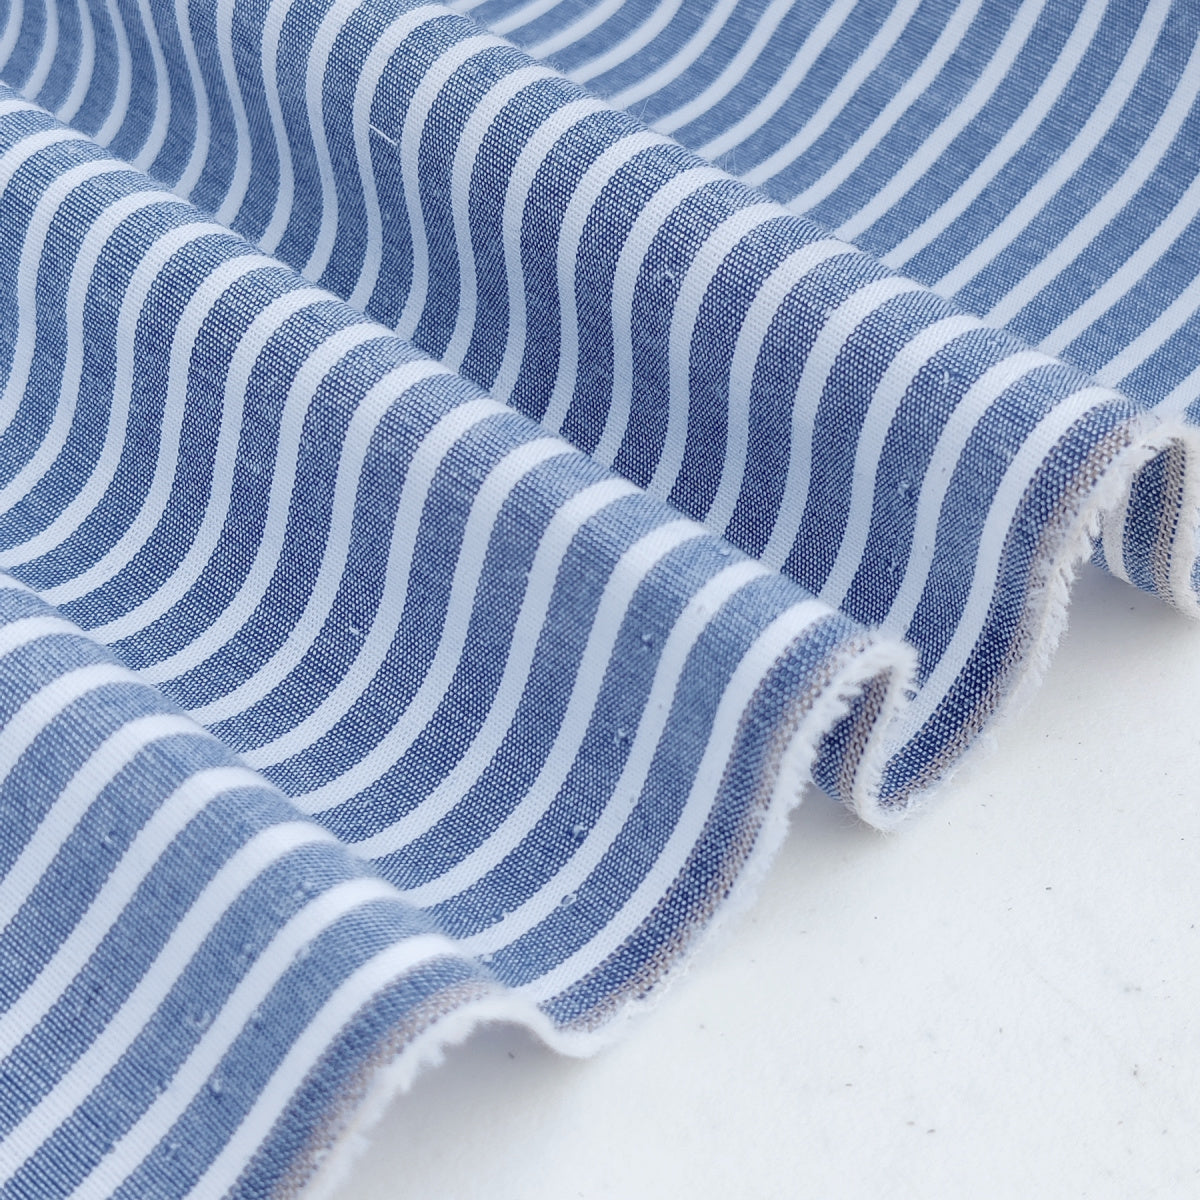 Yarn Dyed Fabric | Blue Stripes